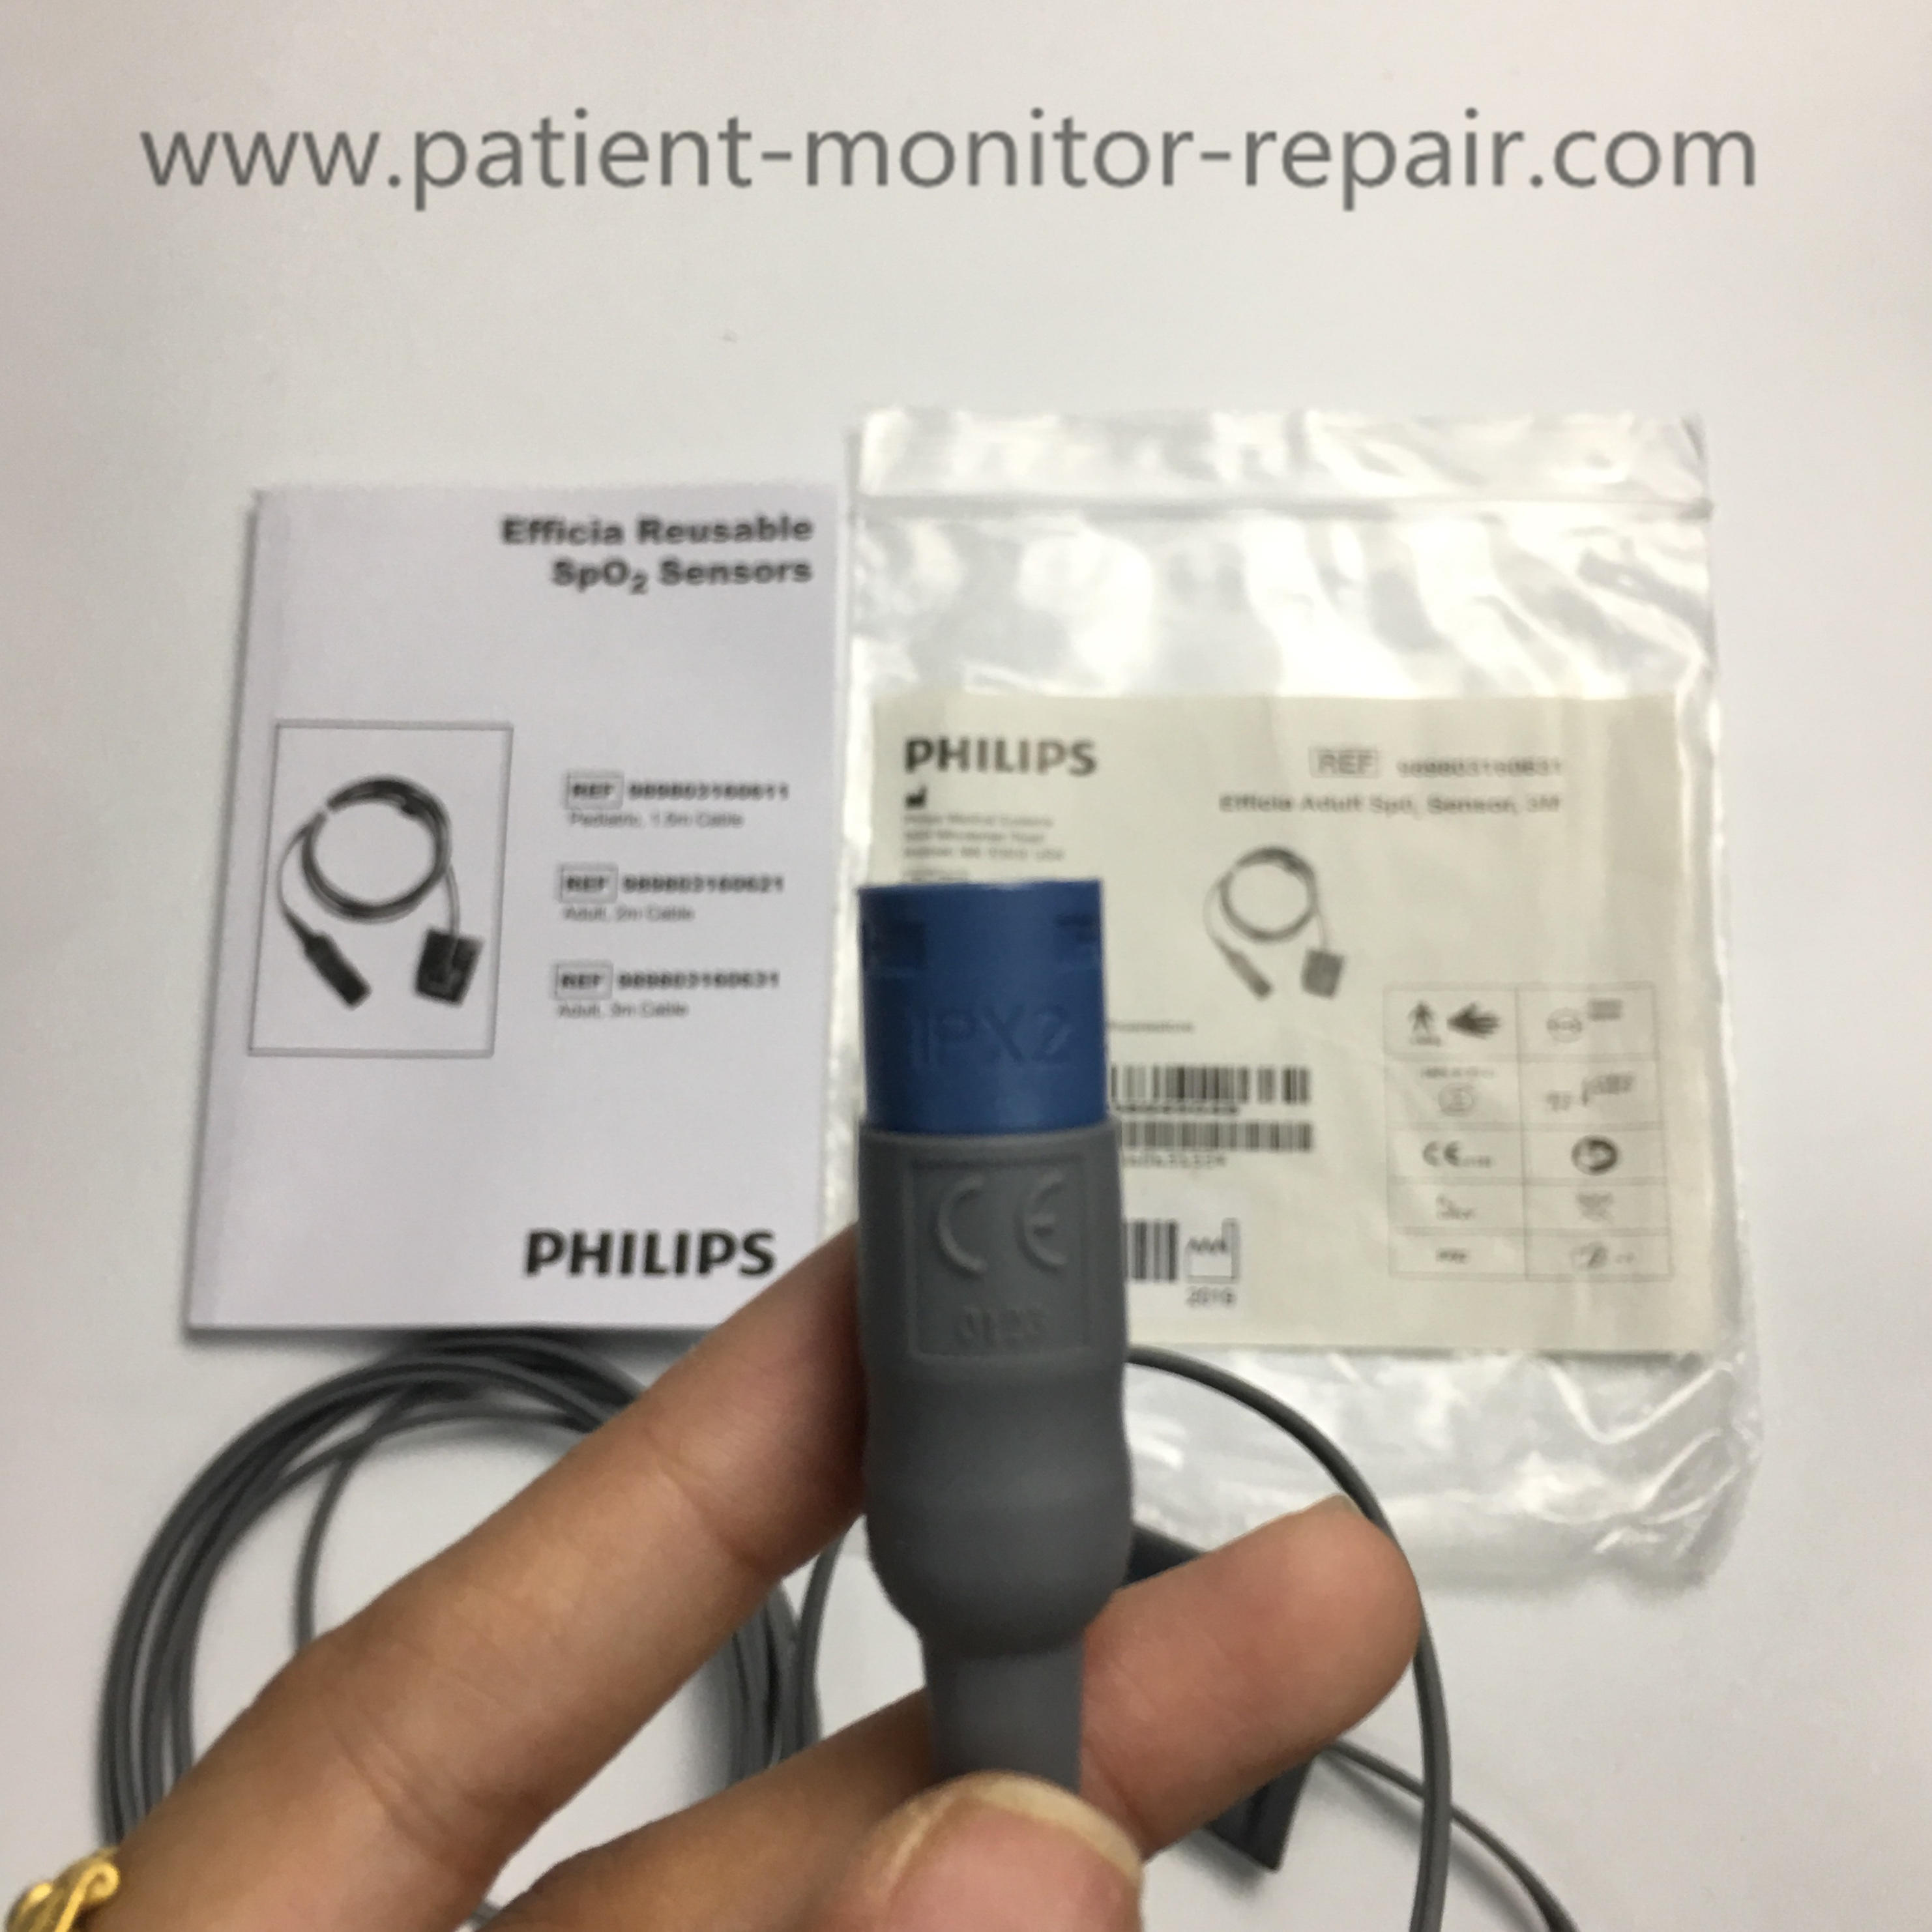 Philips Efficia Adult Spo2 Sensor 3M Ref 989803160631 Meidcal Equipment For Hospital